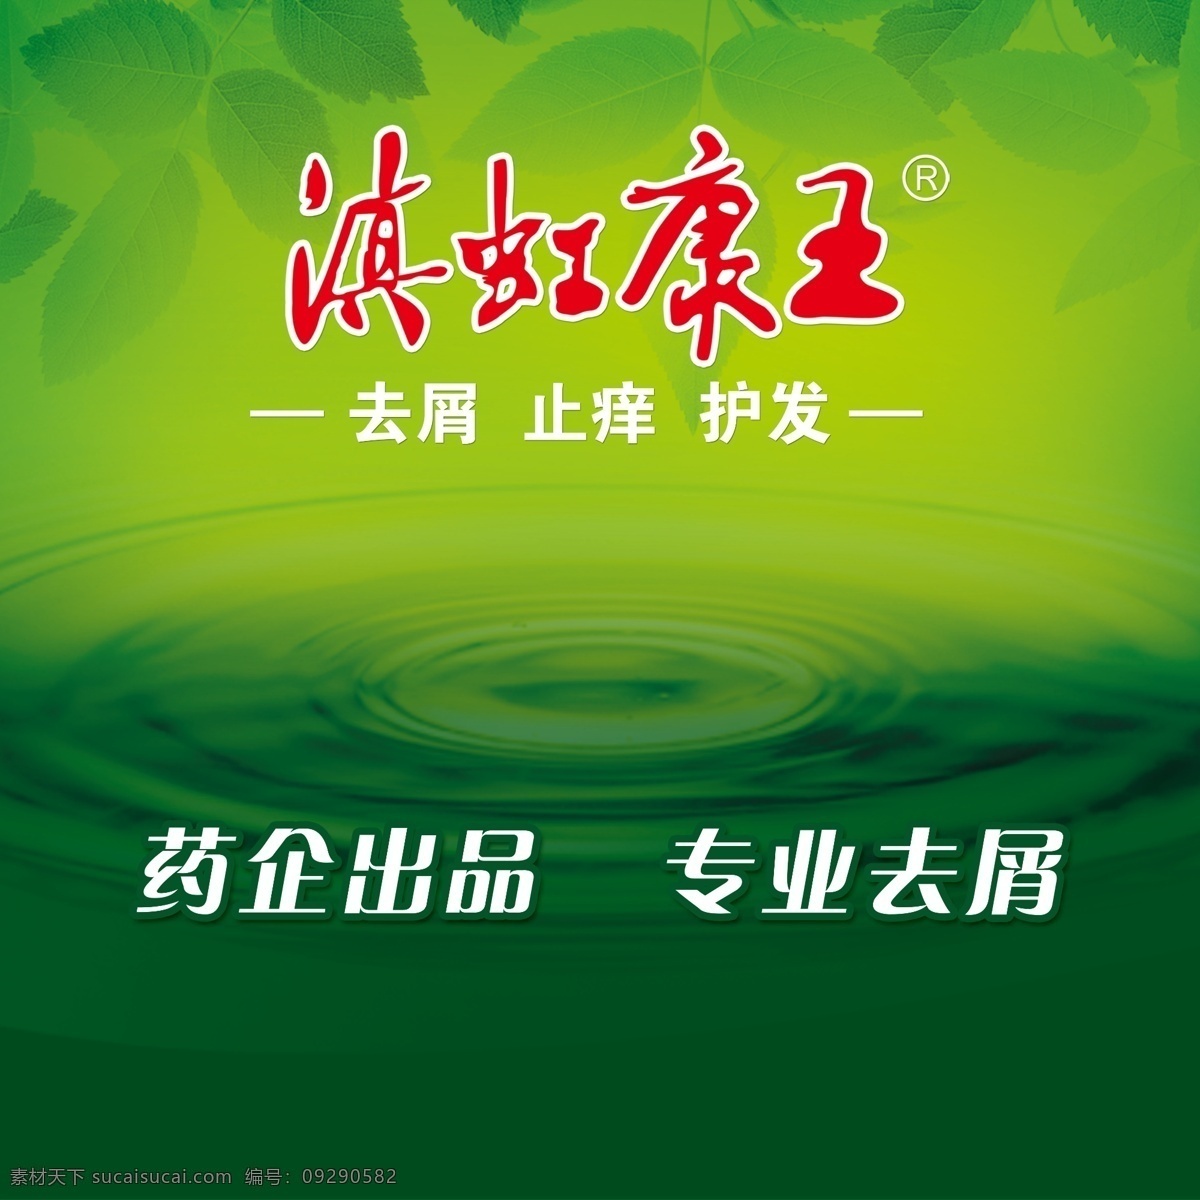 康王 洗发水 去屑 止痒 护发 药 水 绿色背景 树叶 国内广告设计 广告设计模板 源文件